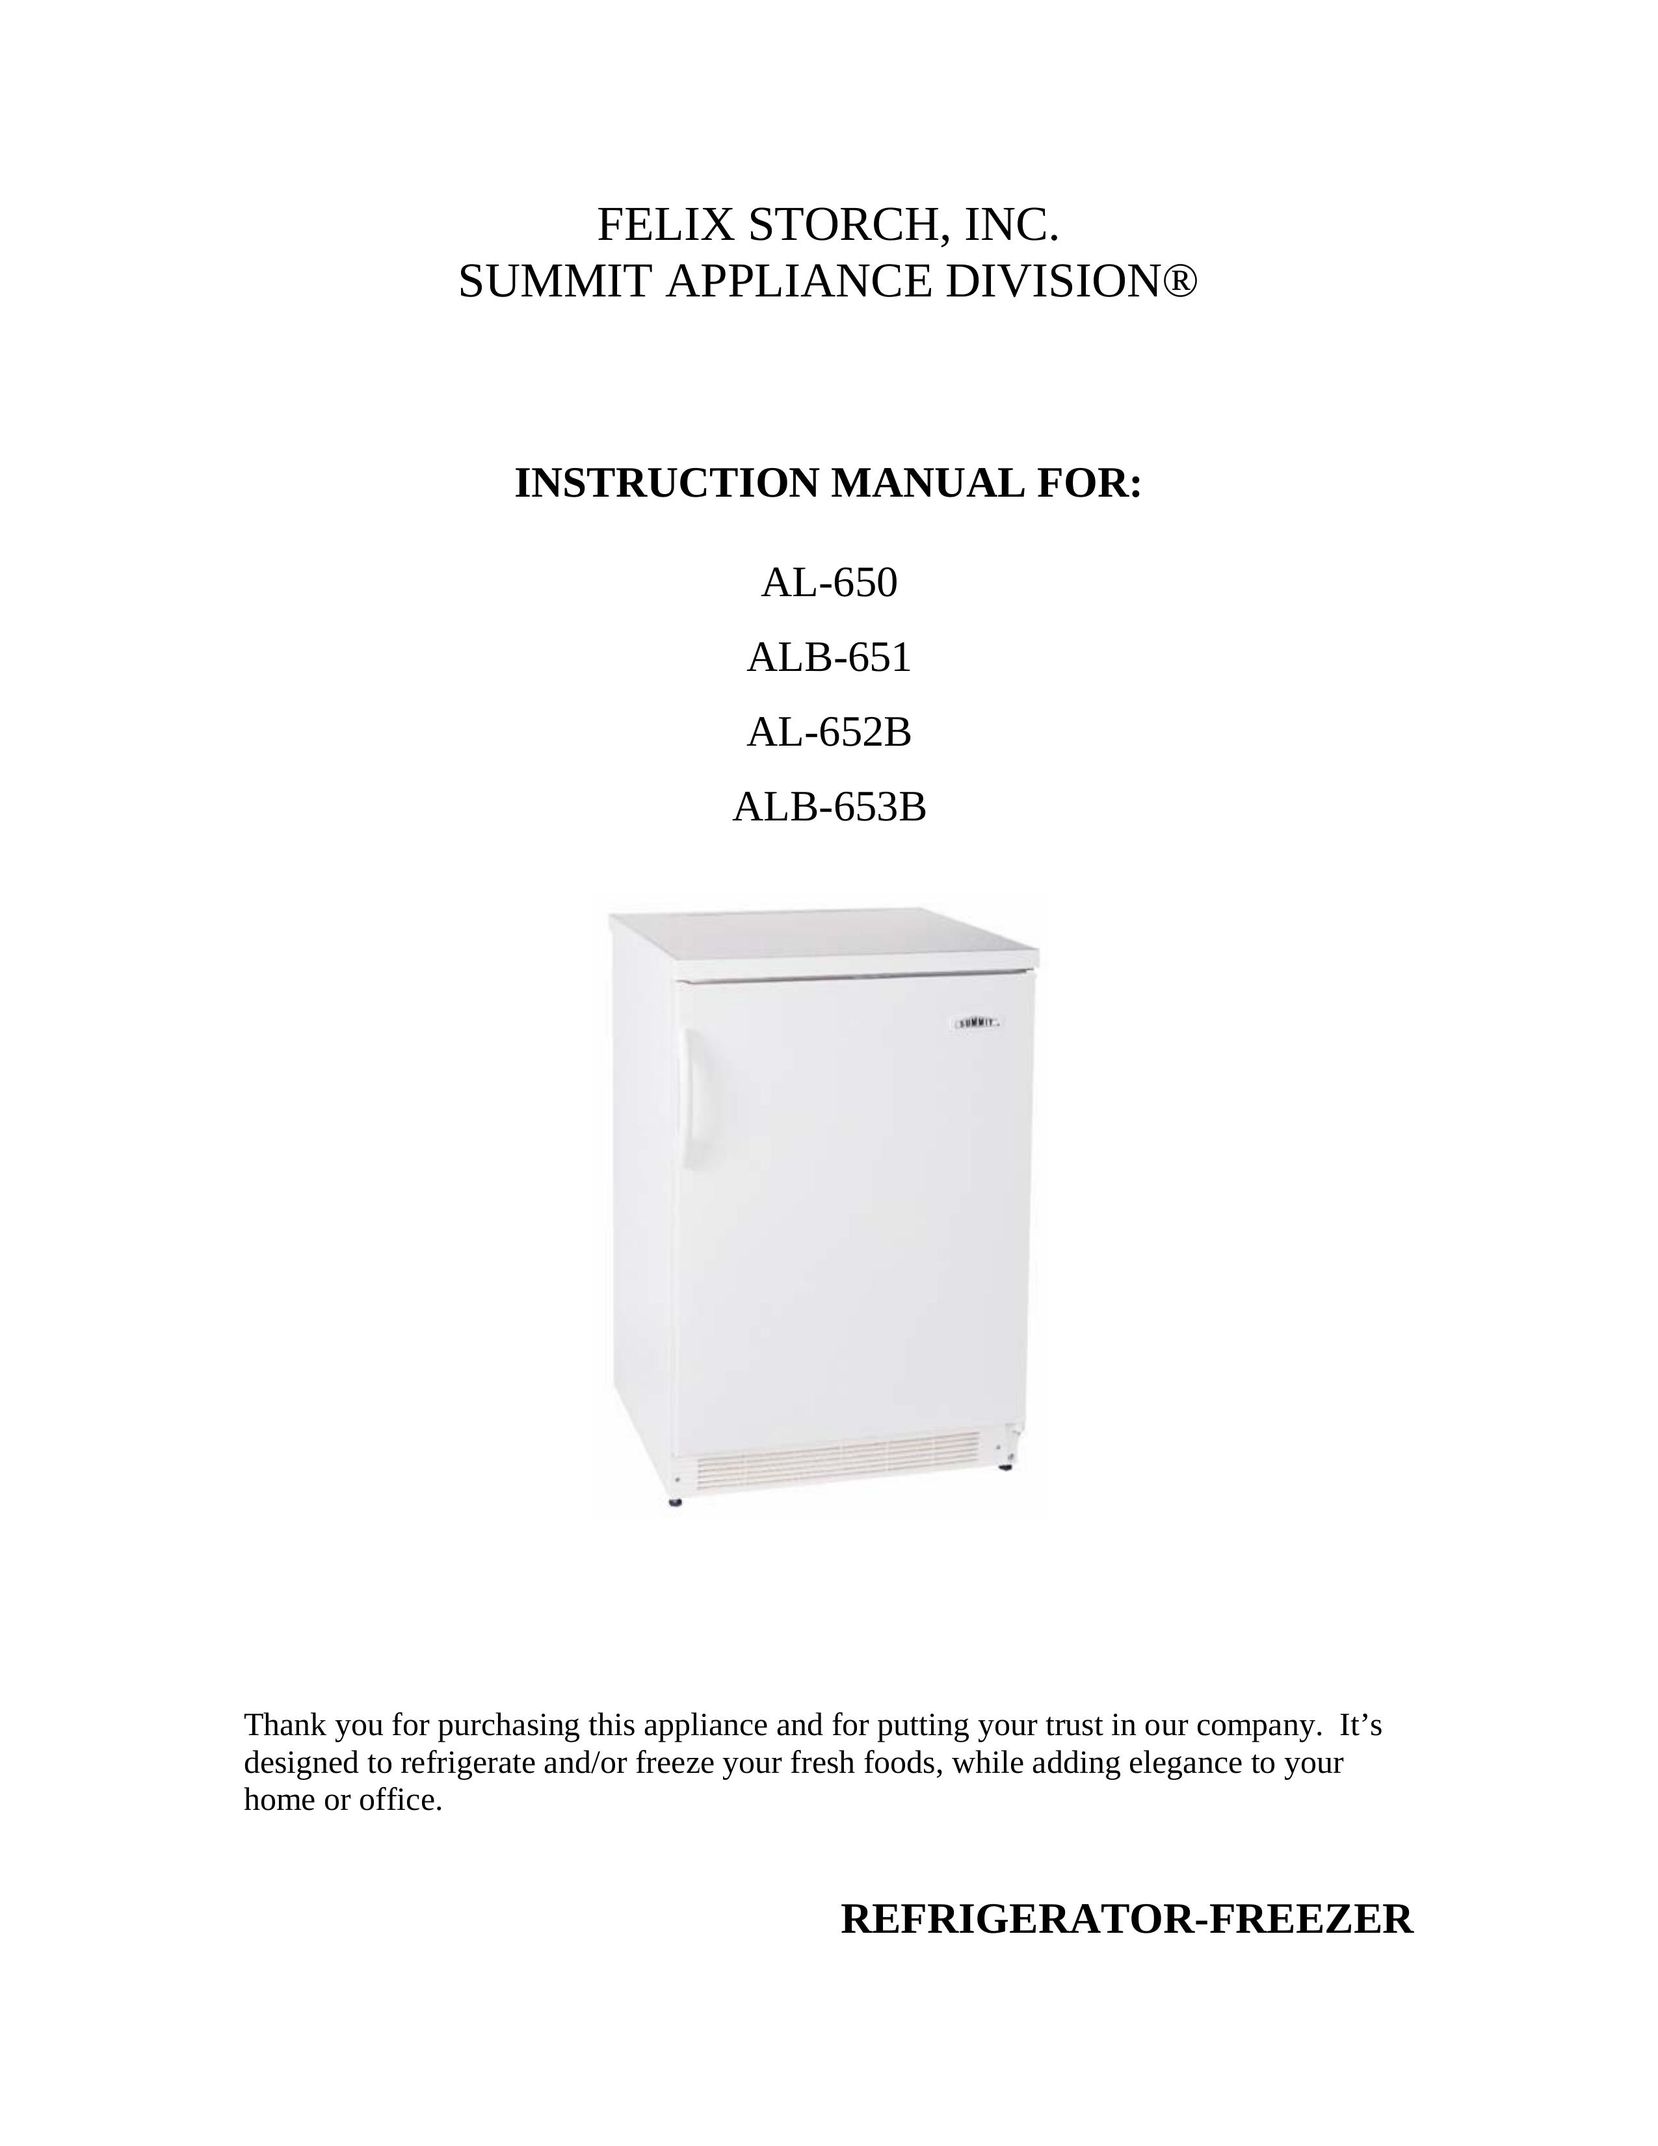 Summit AL-652B Freezer User Manual